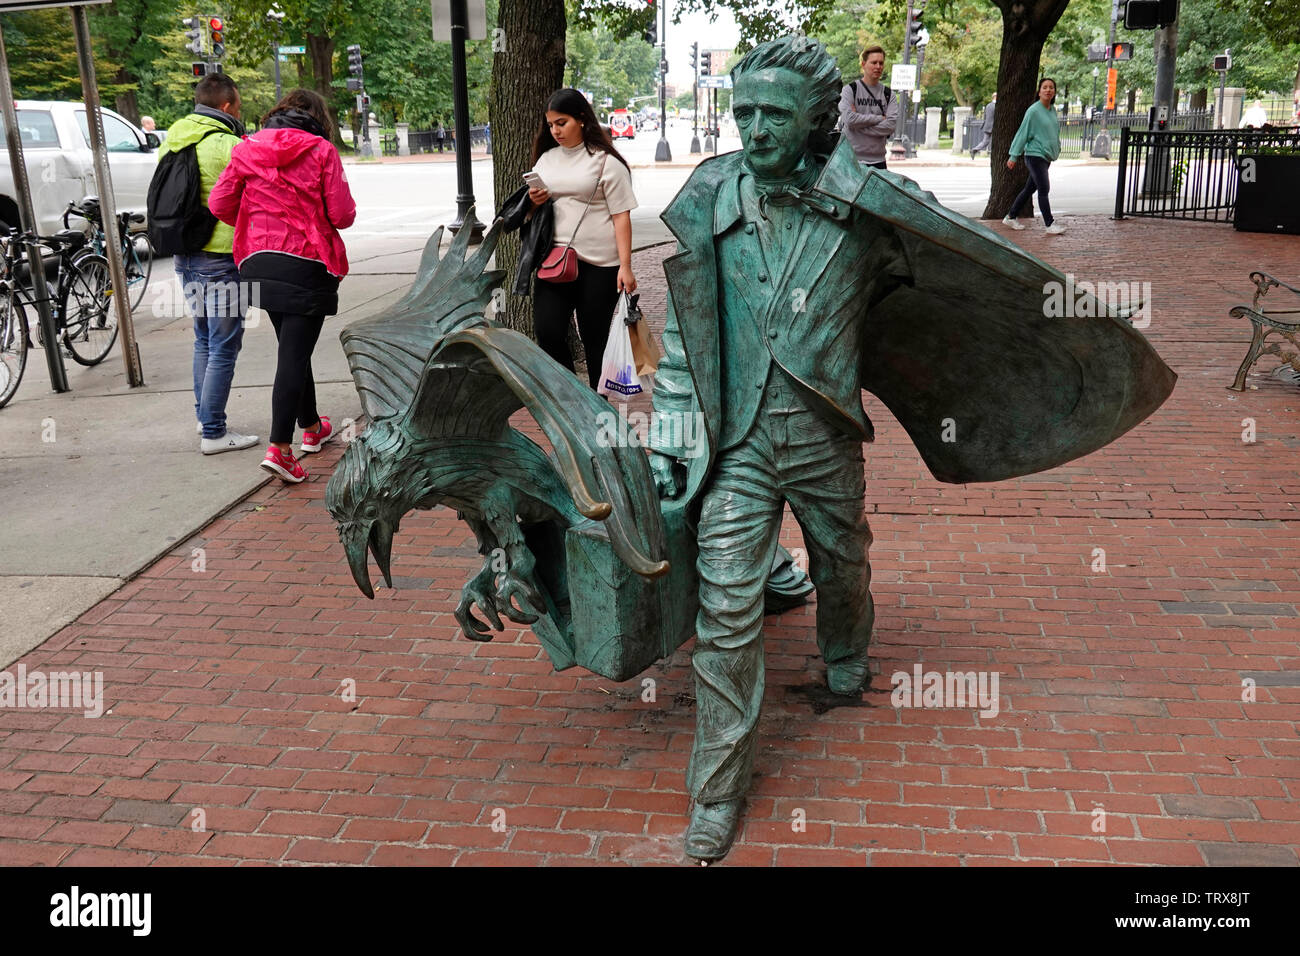 Edgar Allan Poe statue Boston MA Stock Photo